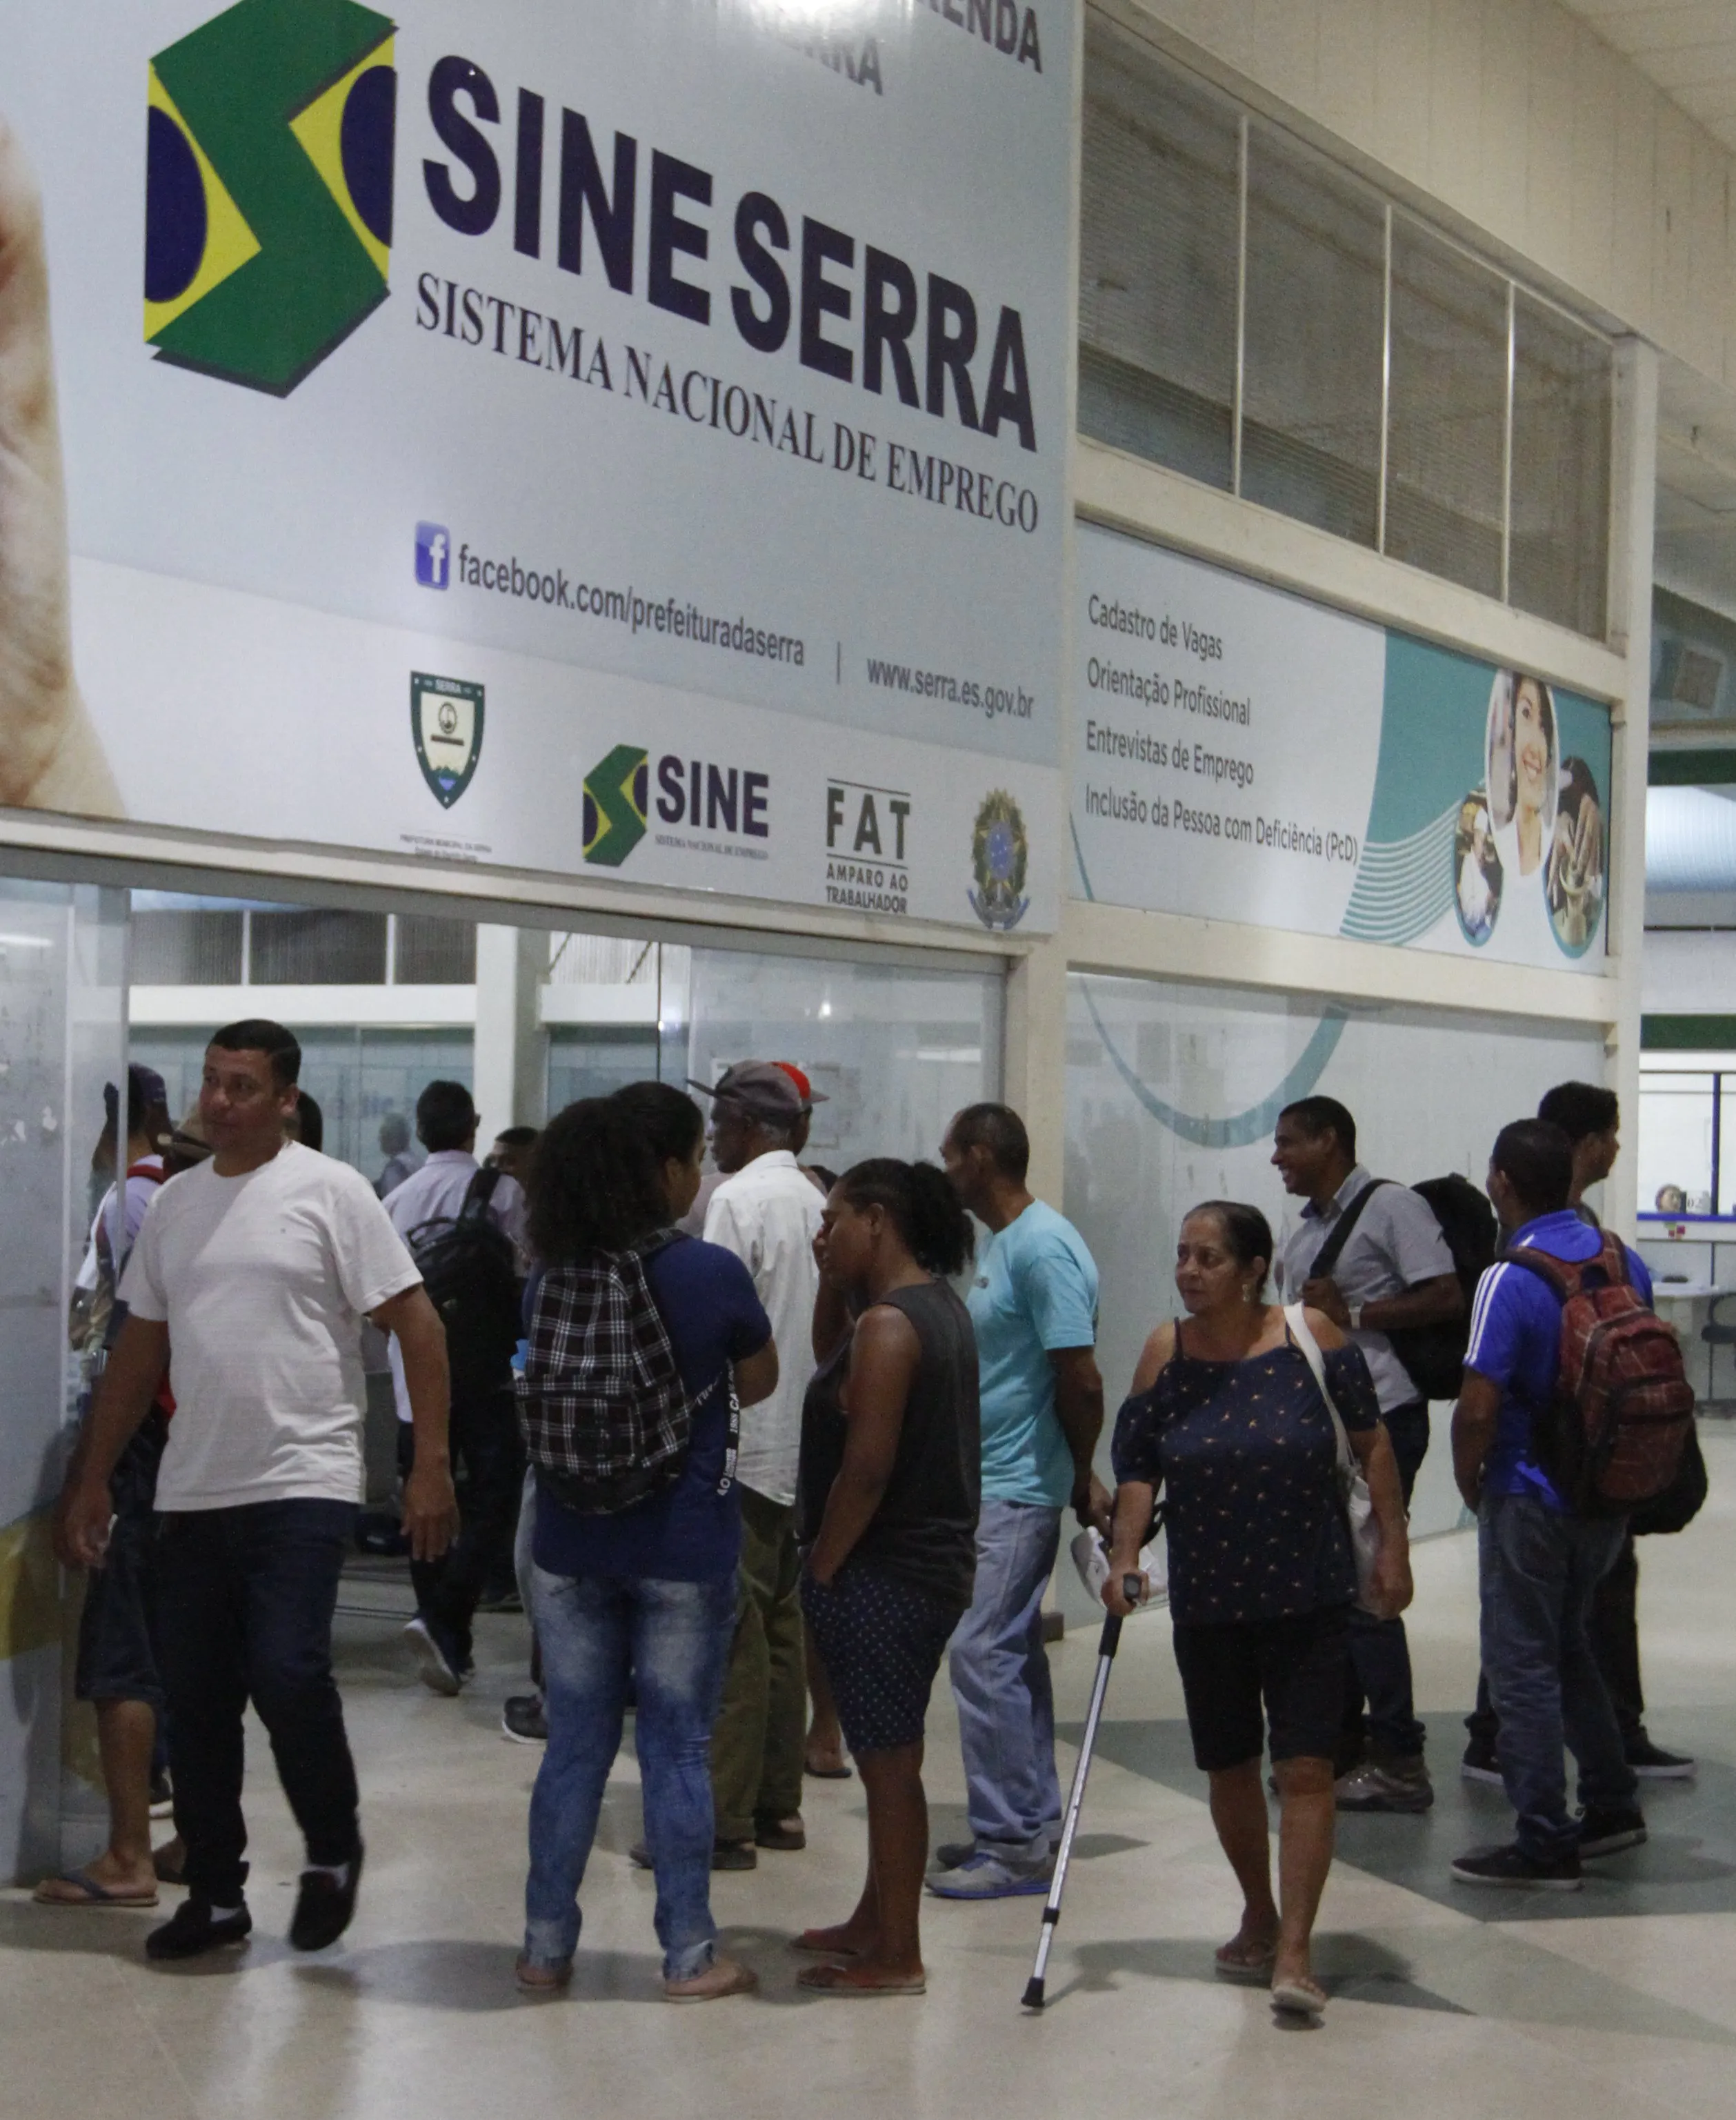 Sine da Serra: agência está com 483 vagas de emprego nesta semana